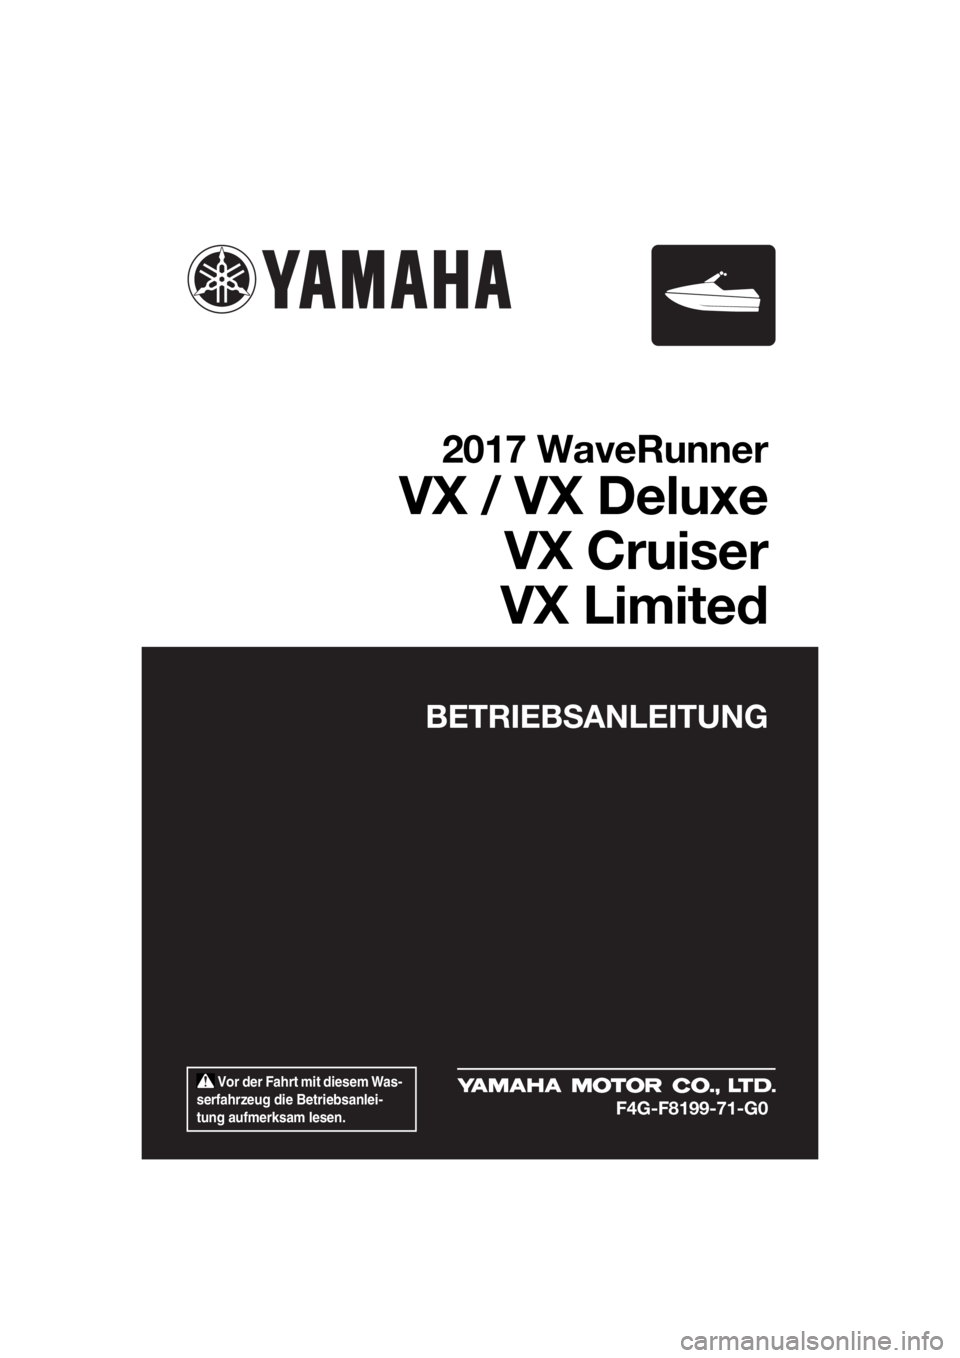 YAMAHA VX DELUXE 2017  Betriebsanleitungen (in German)  Vor der Fahrt mit diesem Was-
serfahrzeug die Betriebsanlei-
tung aufmerksam lesen.
BETRIEBSANLEITUNG
2017 WaveRunner
VX / VX Deluxe
VX Cruiser
VX Limited
F4G-F8199-71-G0
UF4G71G0.book  Page 1  Wedne